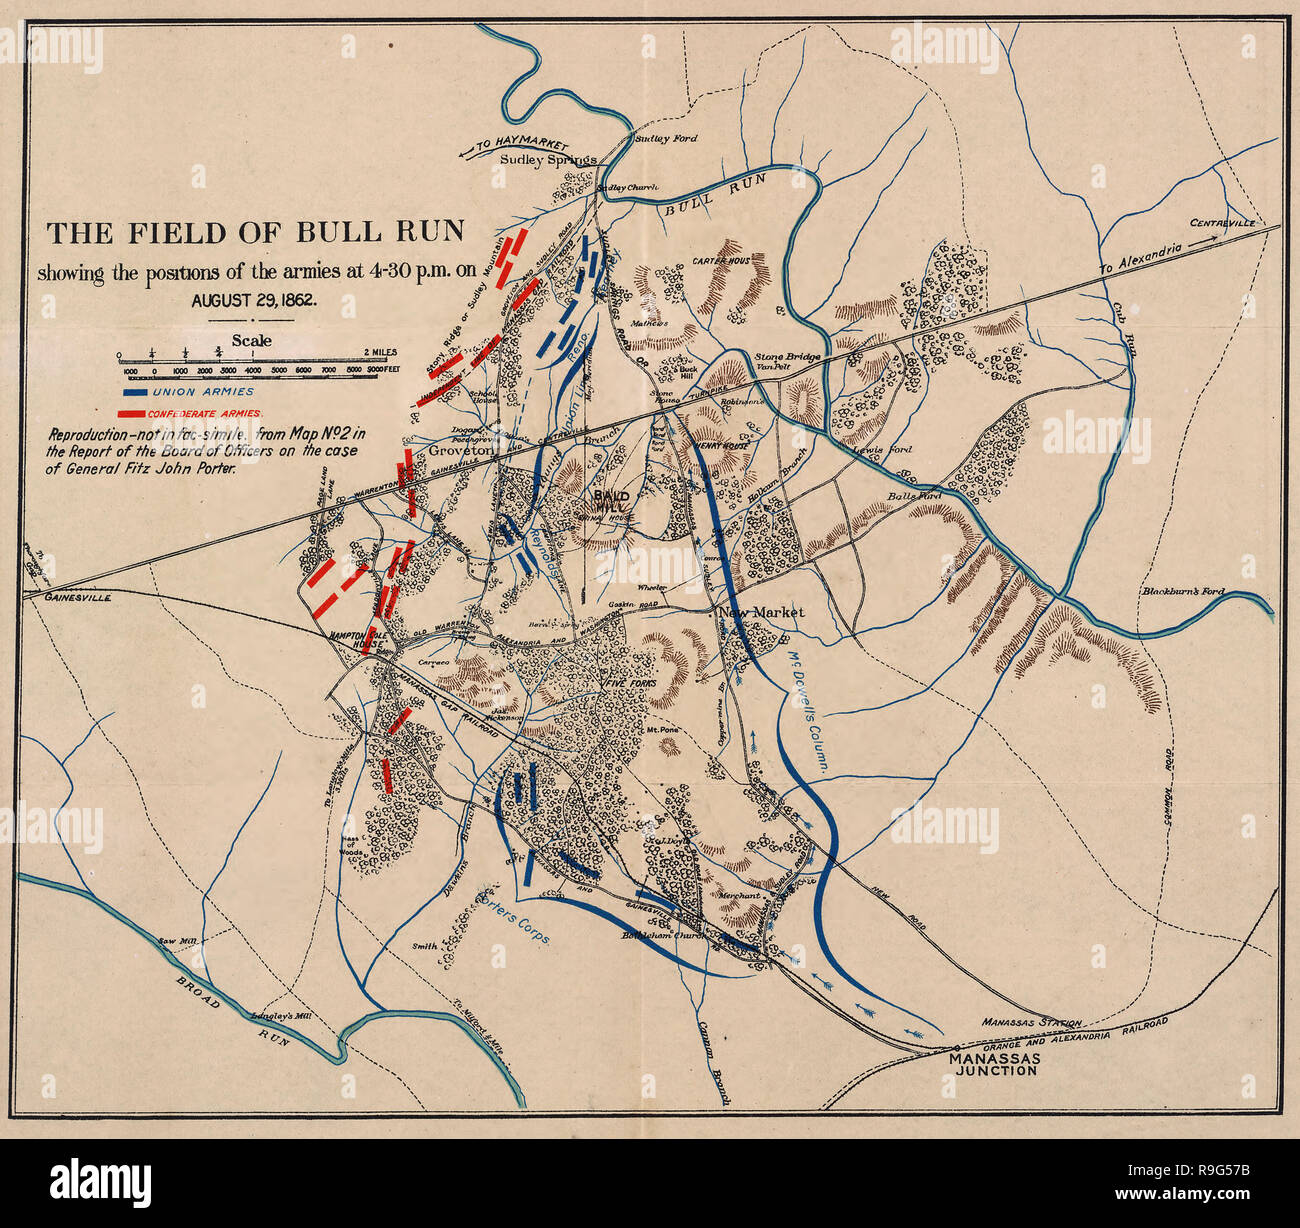 Il campo di Bull Run : mostra le posizioni degli eserciti a 4:30 p.m. il 29 agosto 1862. La seconda battaglia di Bull Run - La Guerra civile americana Foto Stock